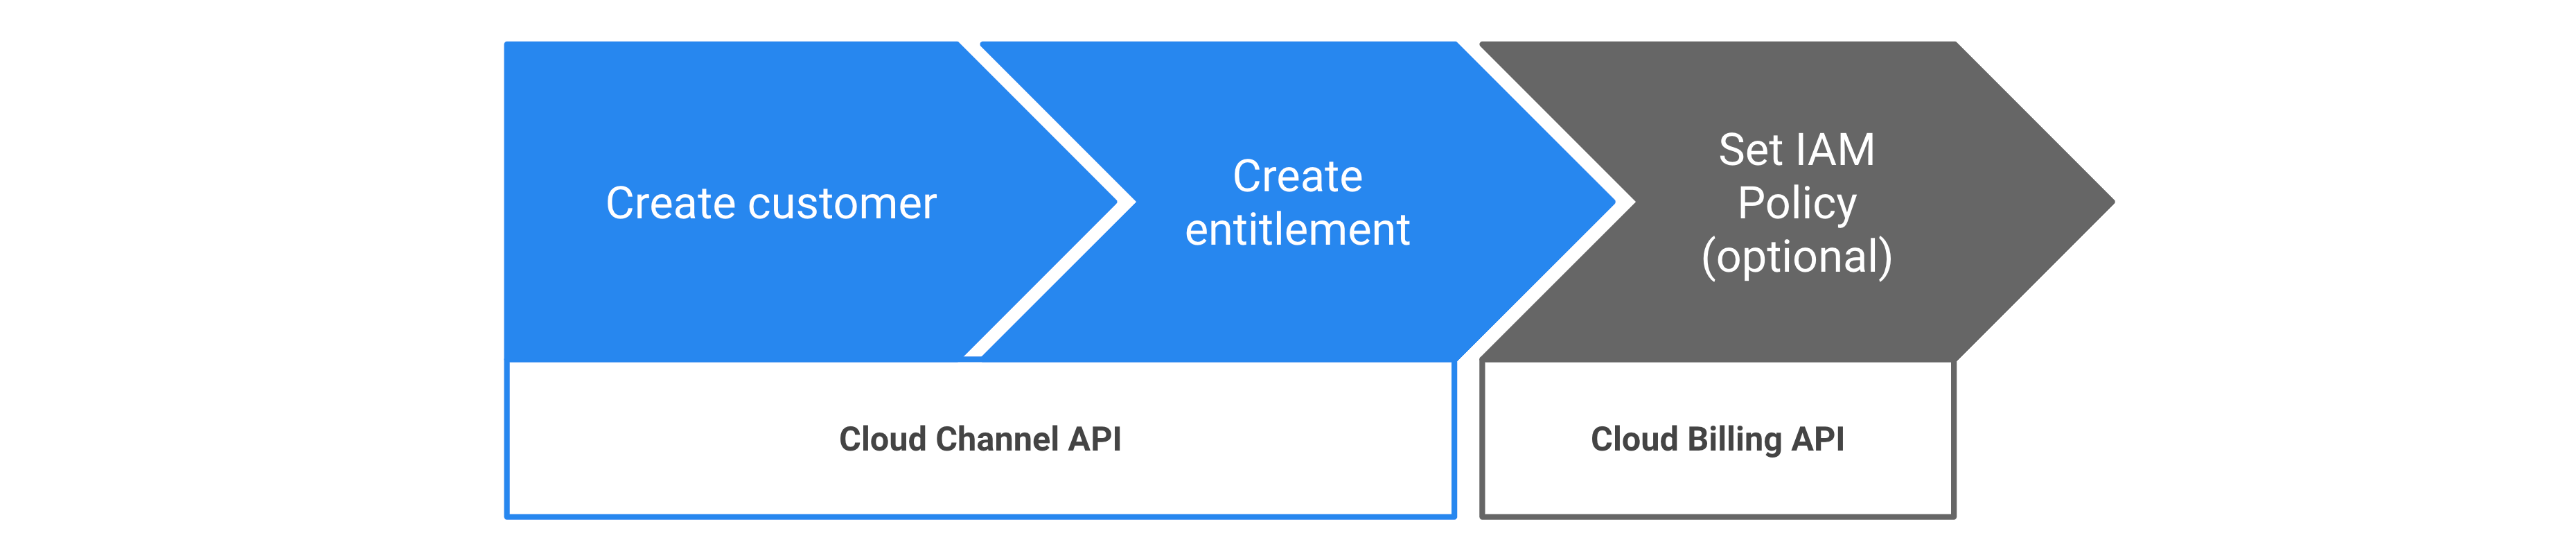 Etapas para provisionar direitos do Google Cloud usando a API Cloud Channel